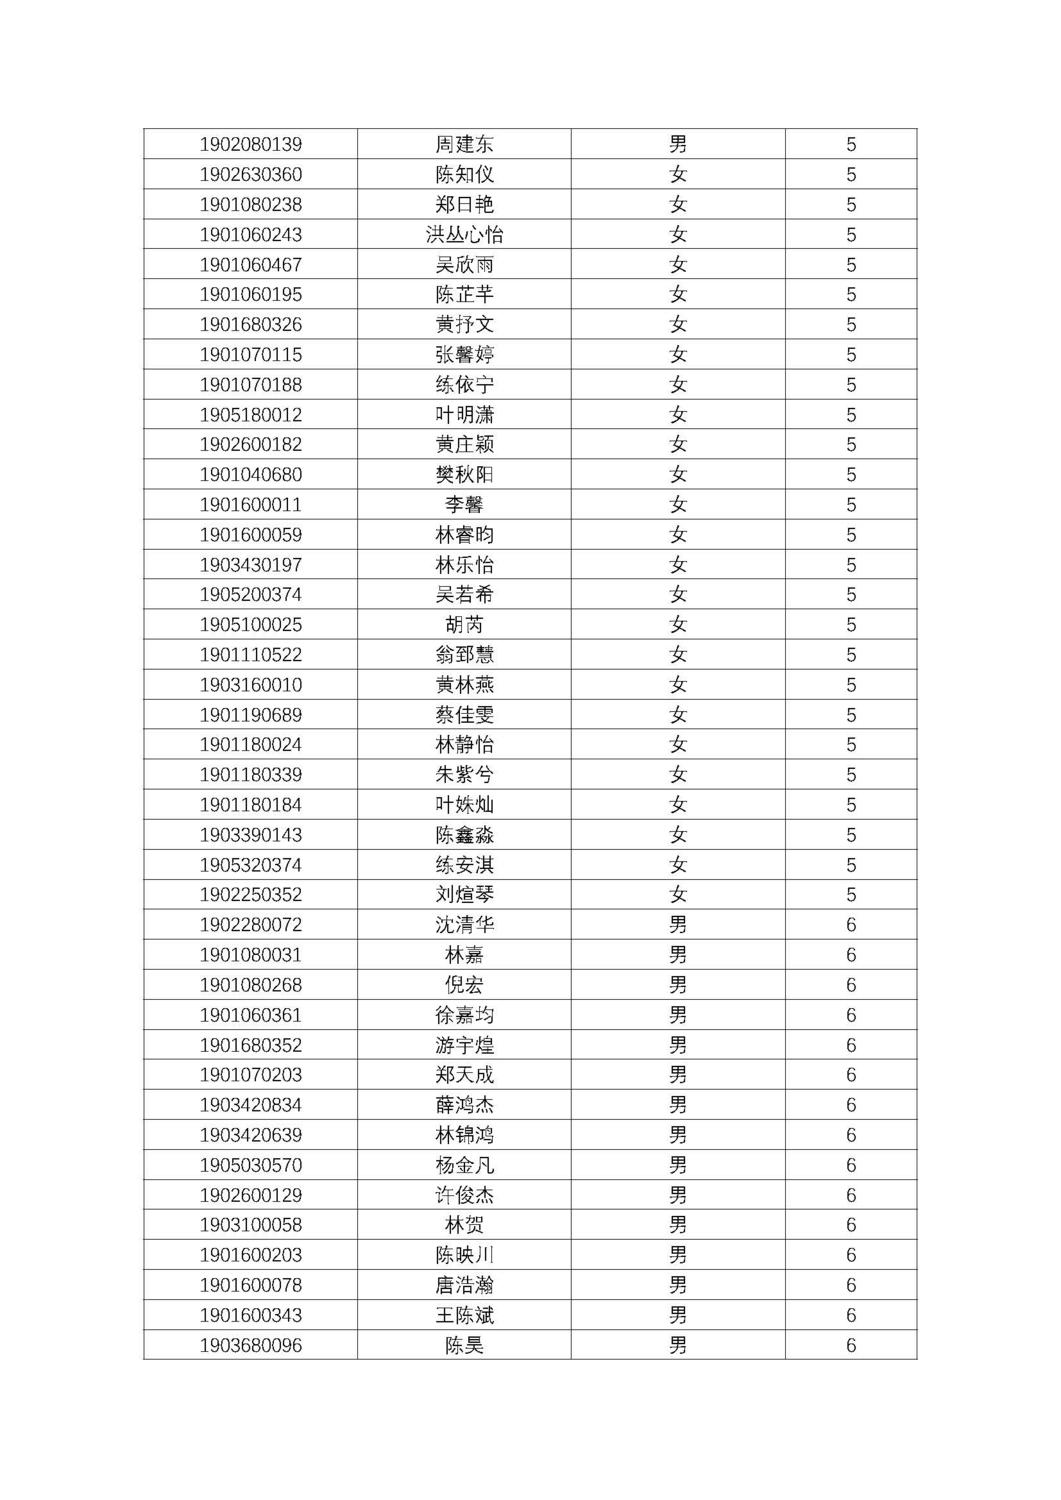 福州第十八中学2019级高一新生分班名单及报到须知_页面_07.jpg